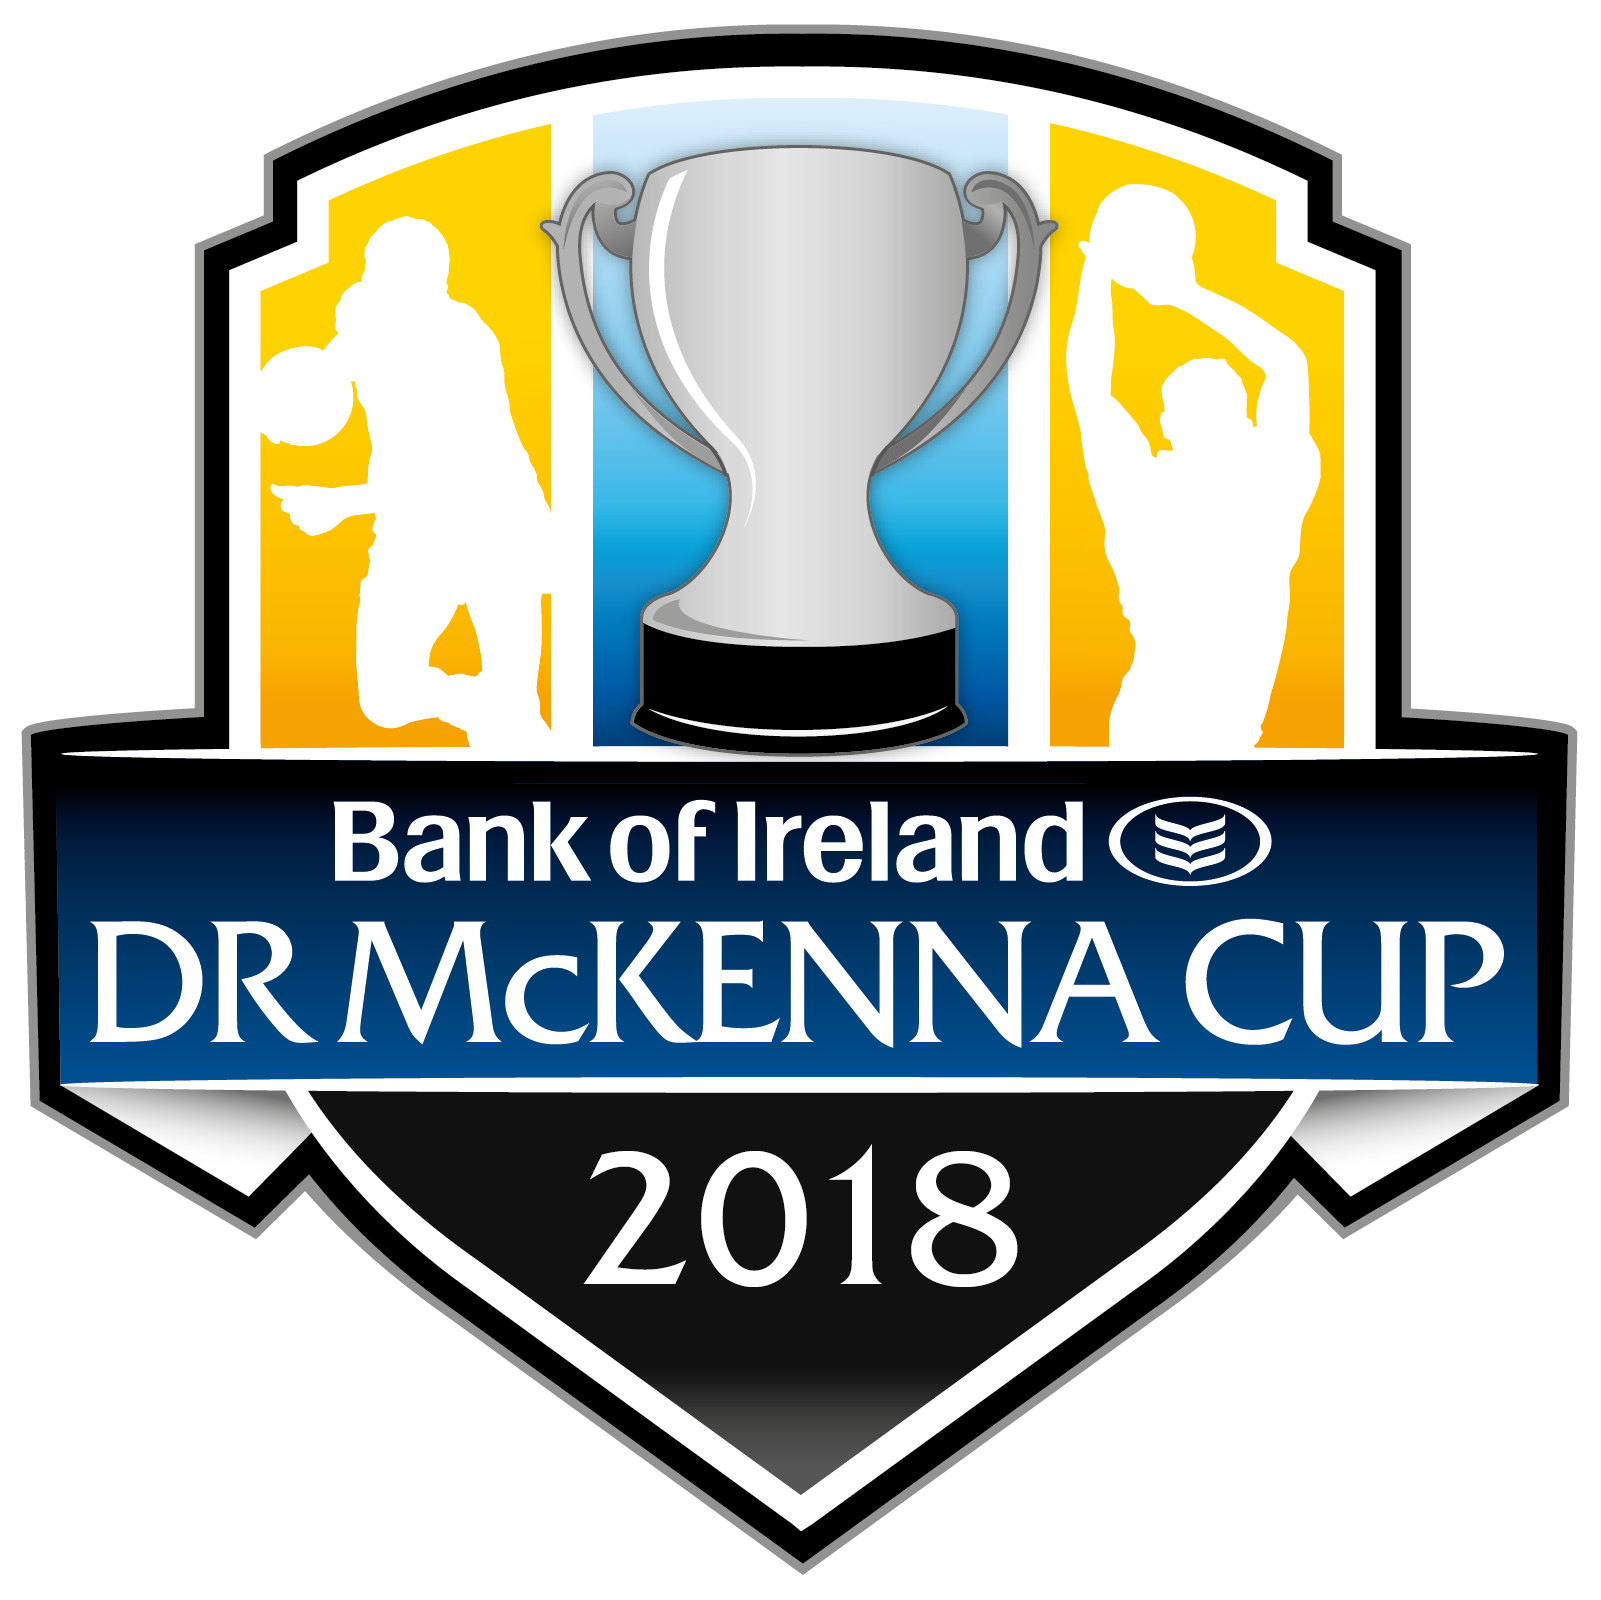 Bank of Ireland Dr McKenna Cup Round 1 Podcast